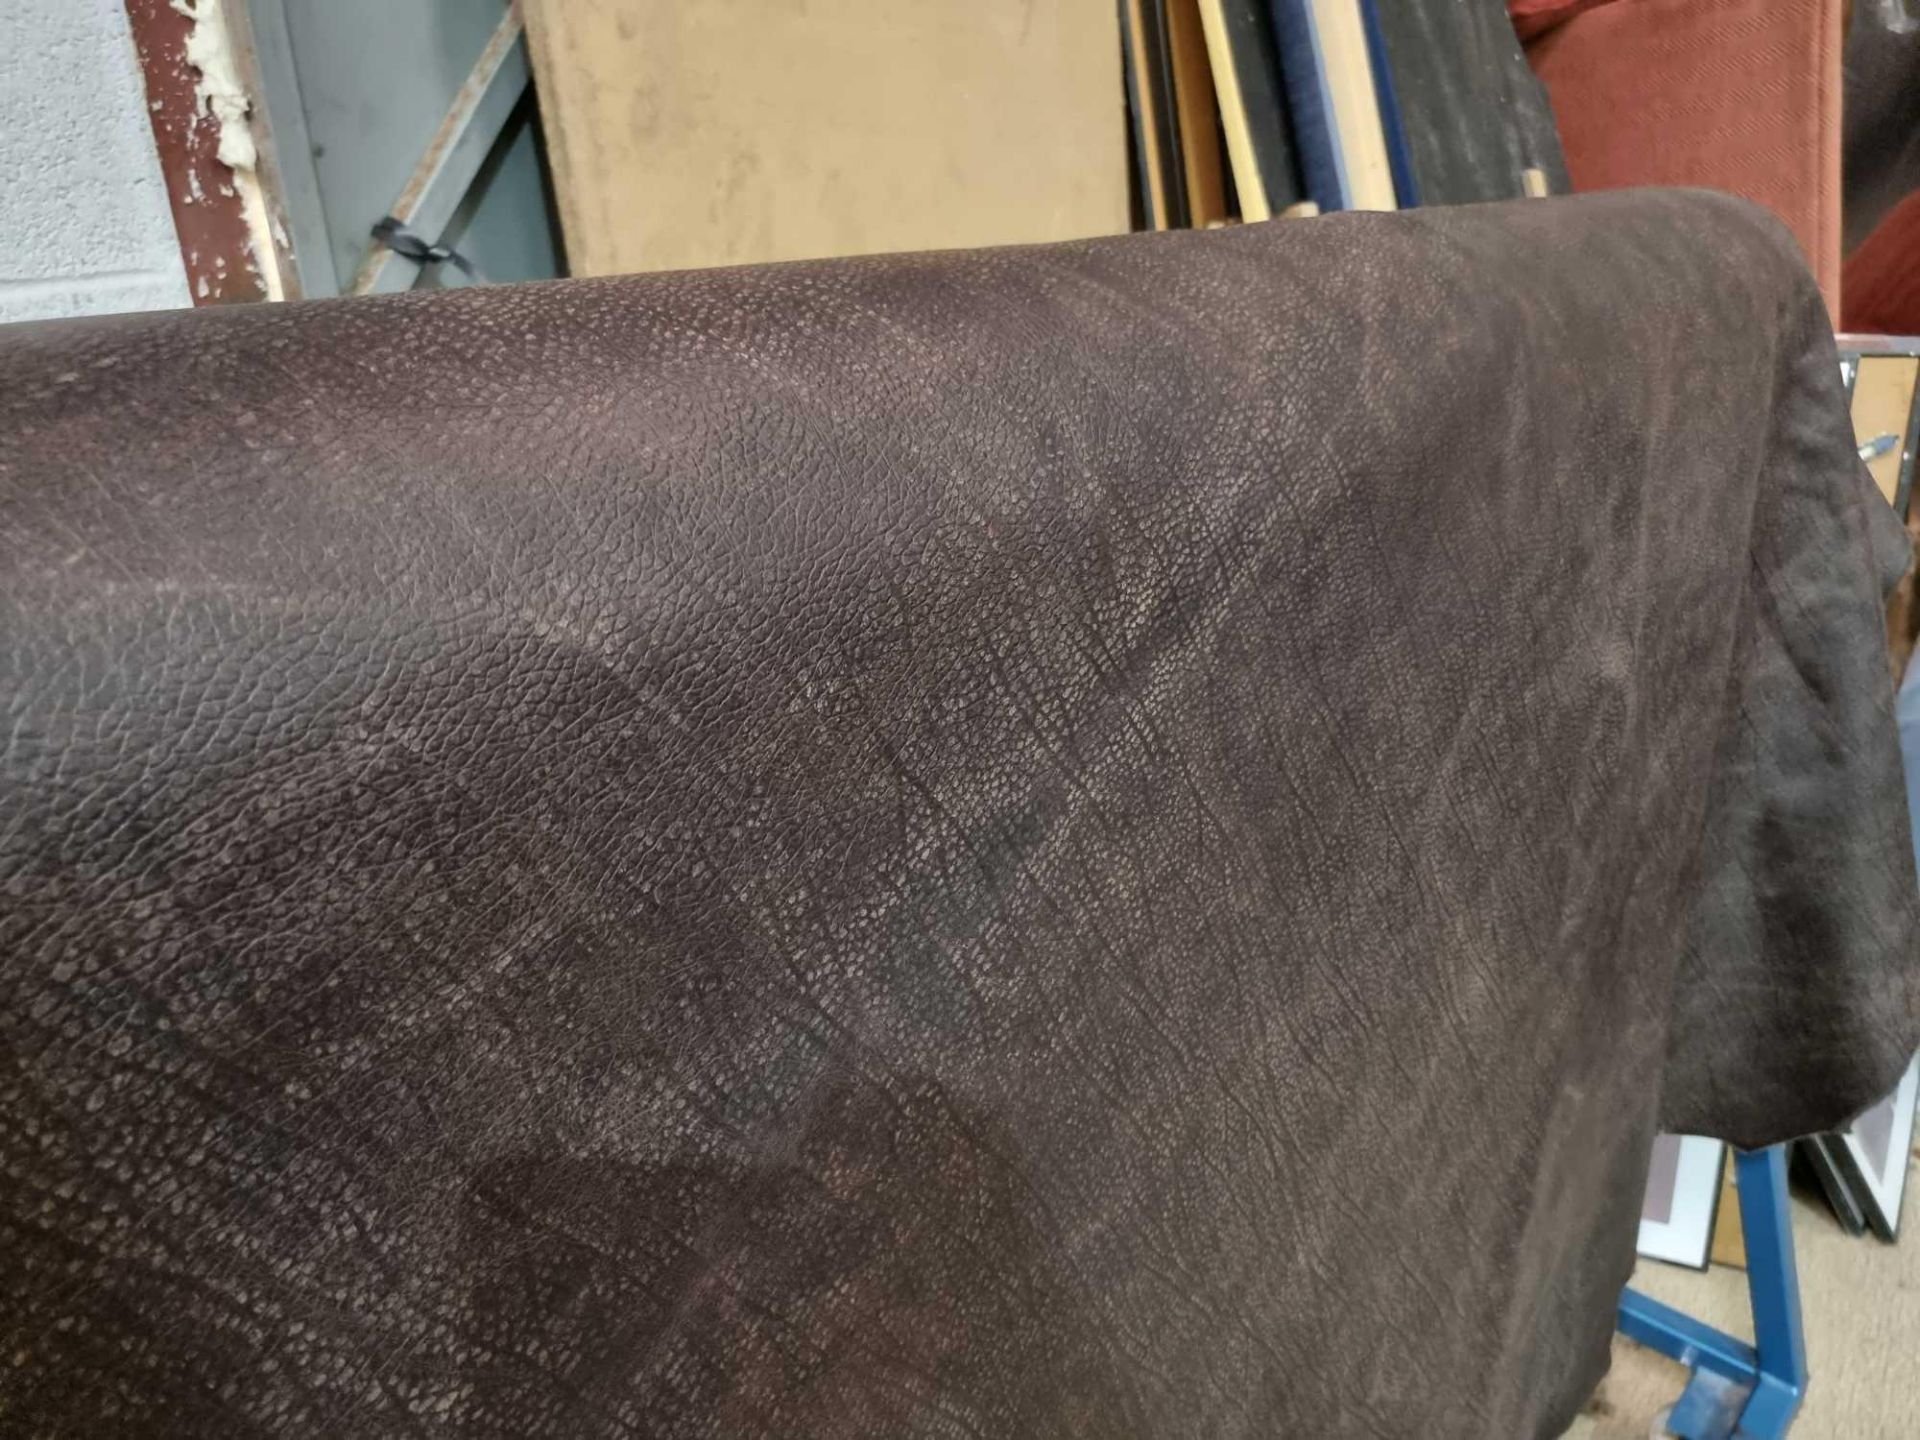 Chaps Satchel Conker Leather Hide approximately 4 6M2 2 3 x 2cm ( Hide No,260)